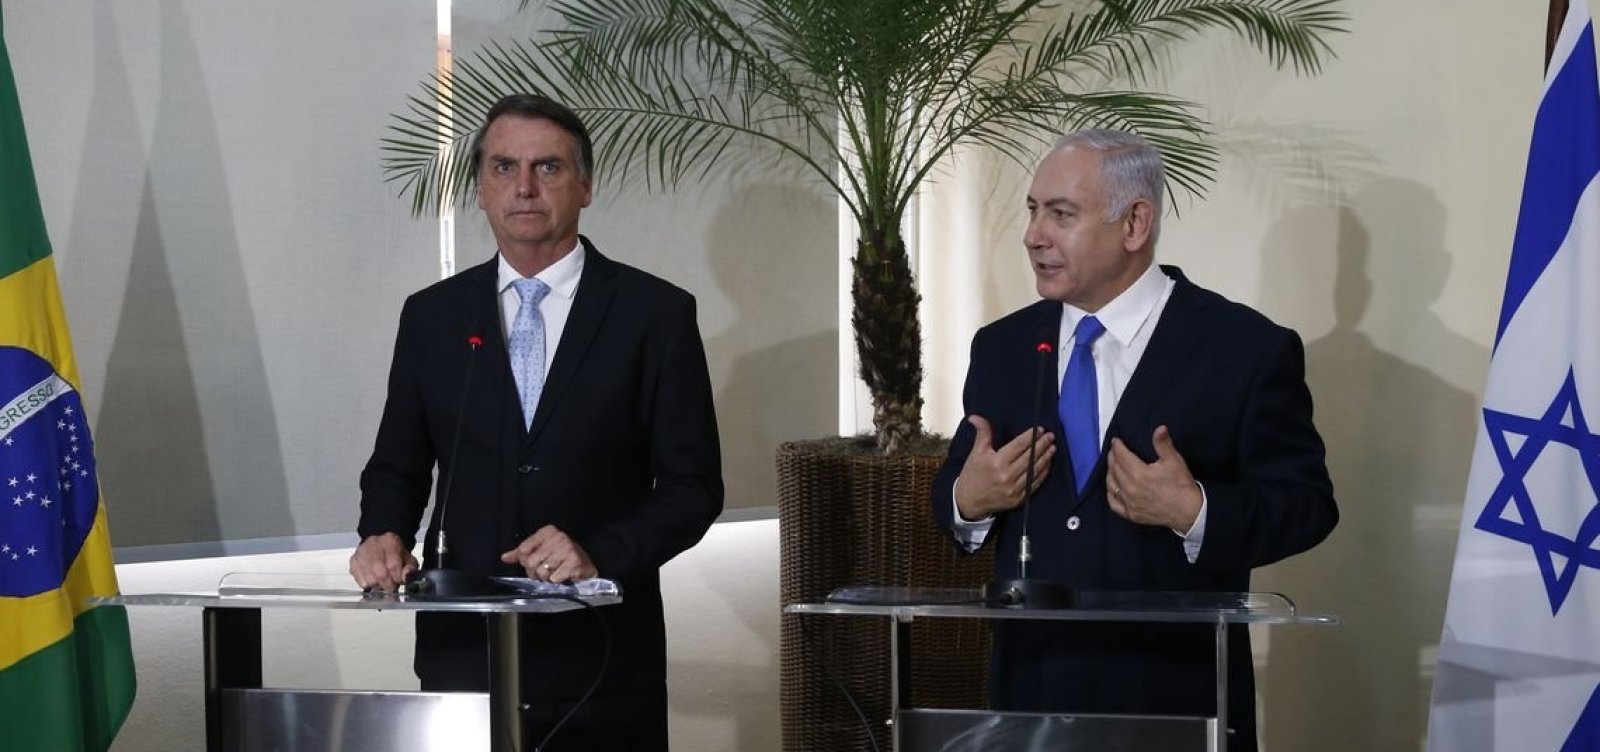 Bolsonaro concede Ordem Nacional do Cruzeiro do Sul a Netanyahu